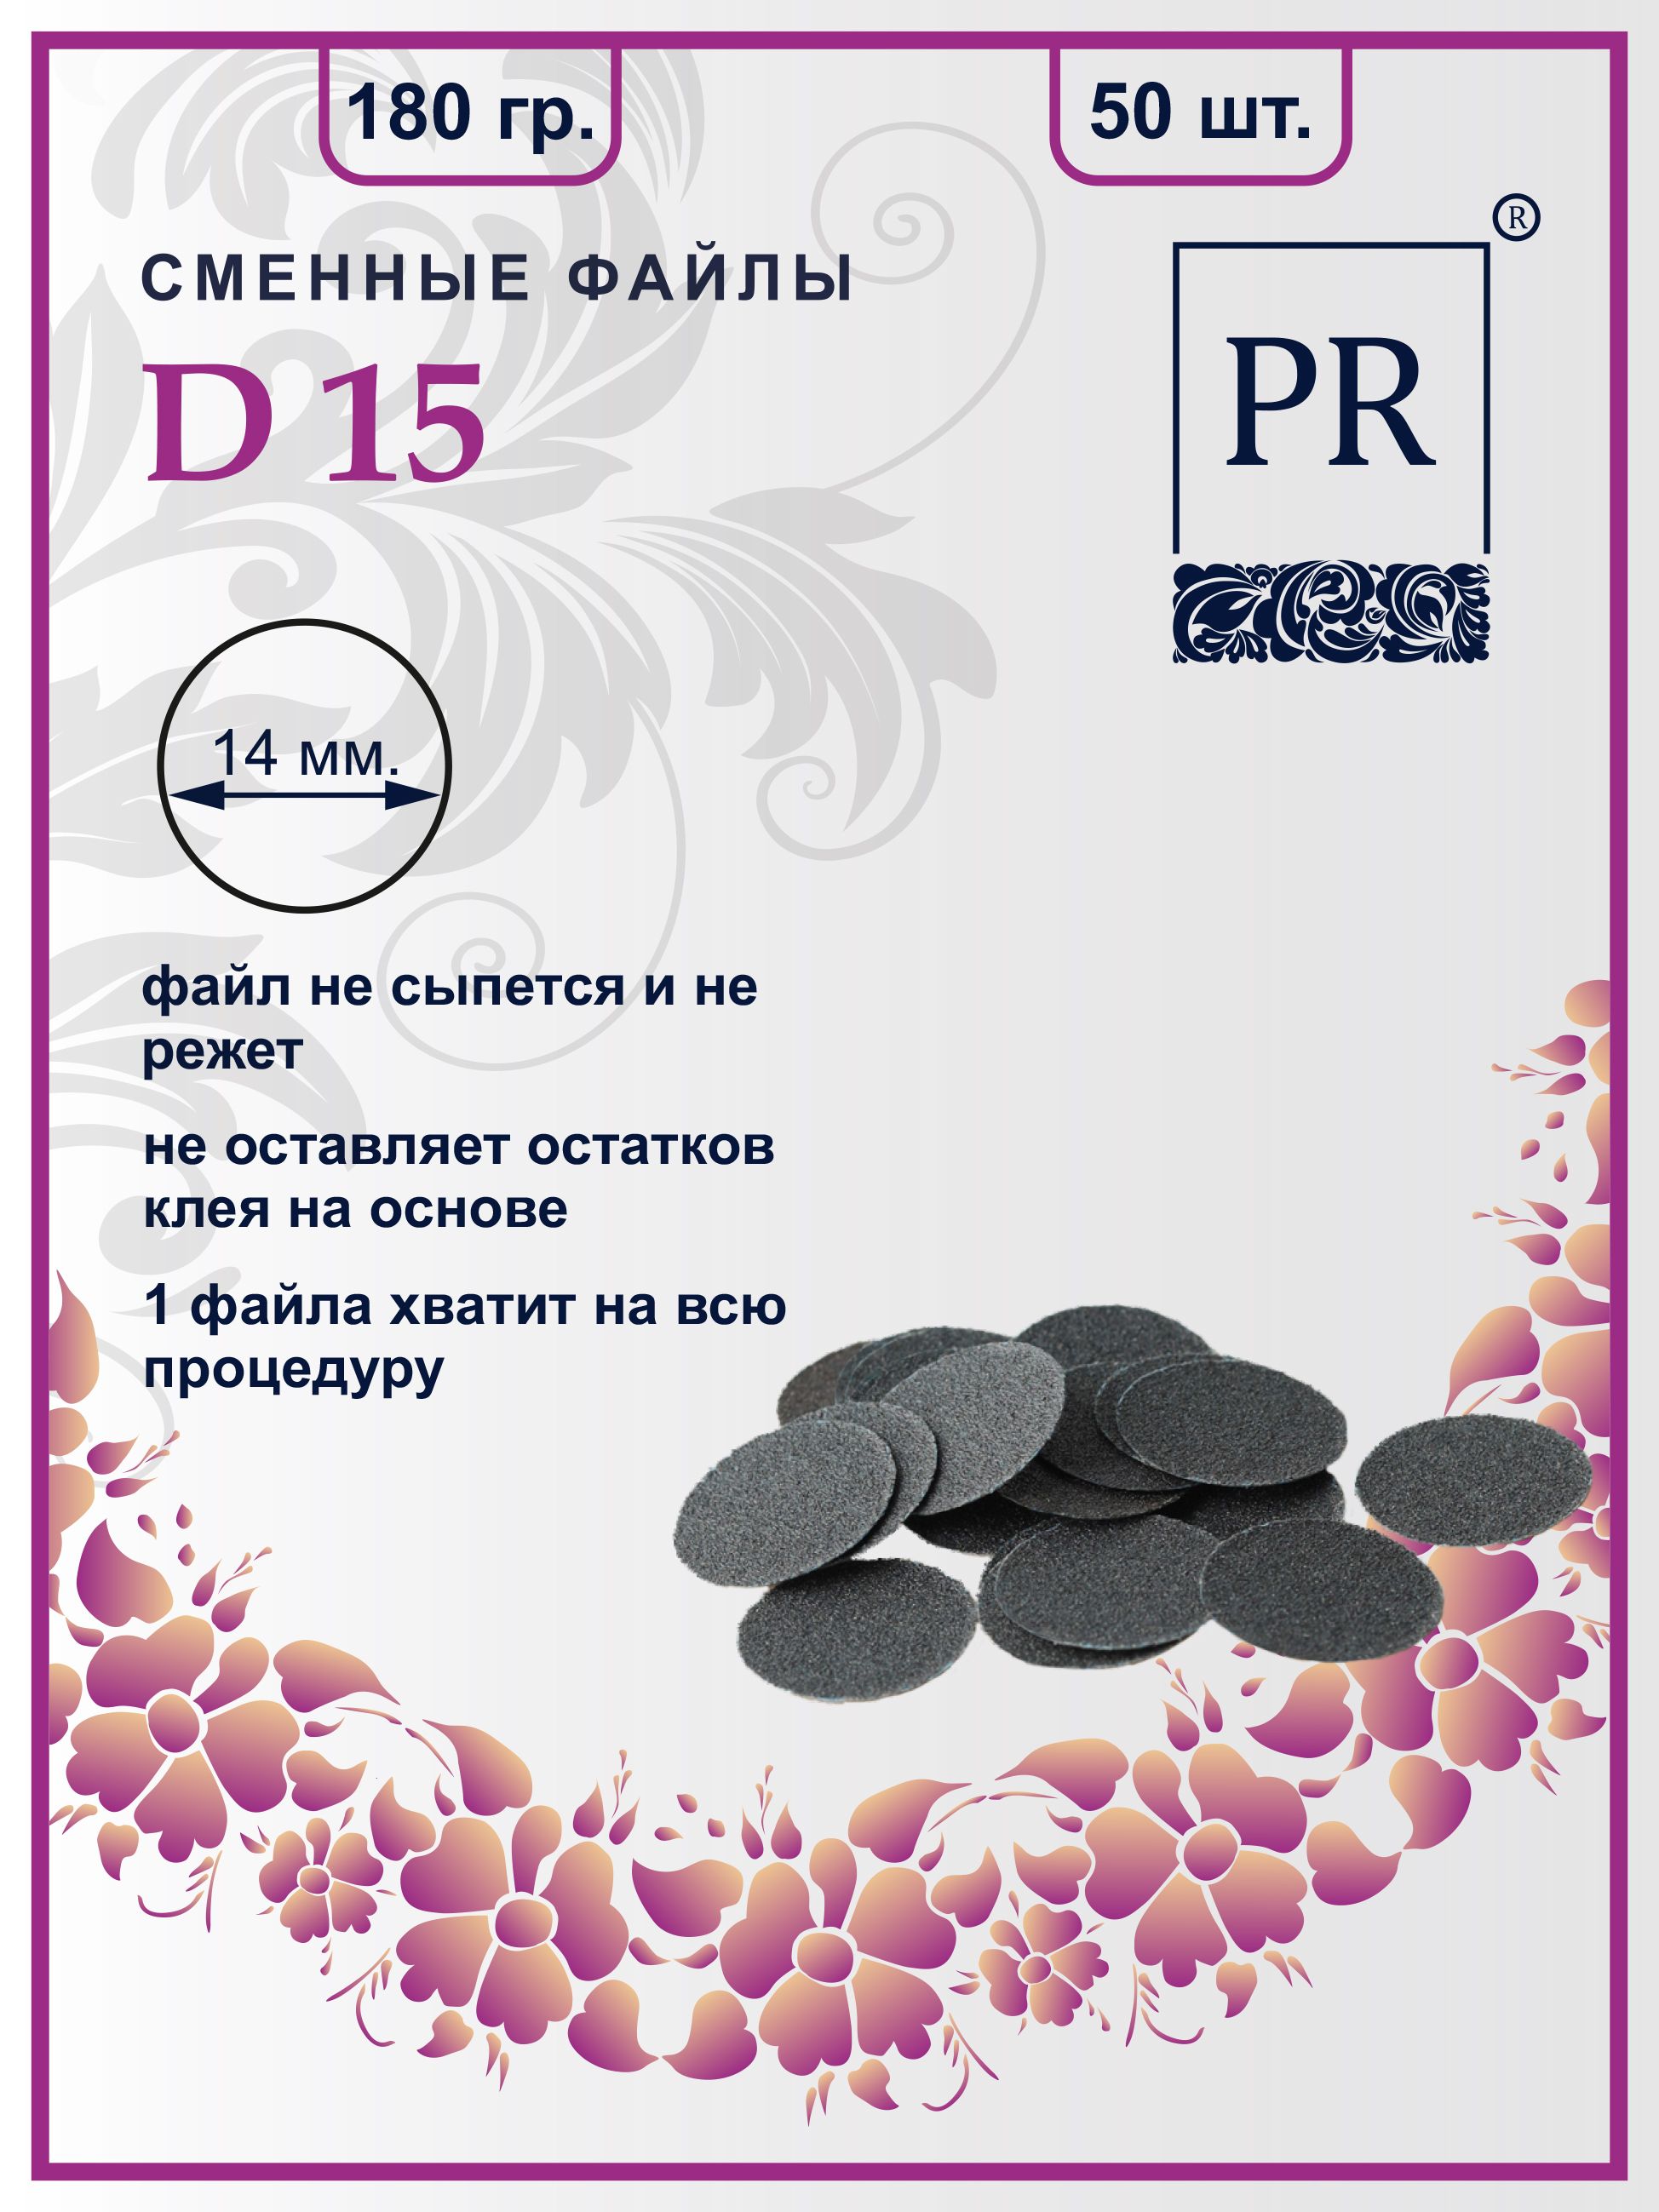 Сменные файлы Pilochki Russia диски для педикюра для диска S 180 грит 50 штук ручка металл шариковая russia синяя паста 1 мм